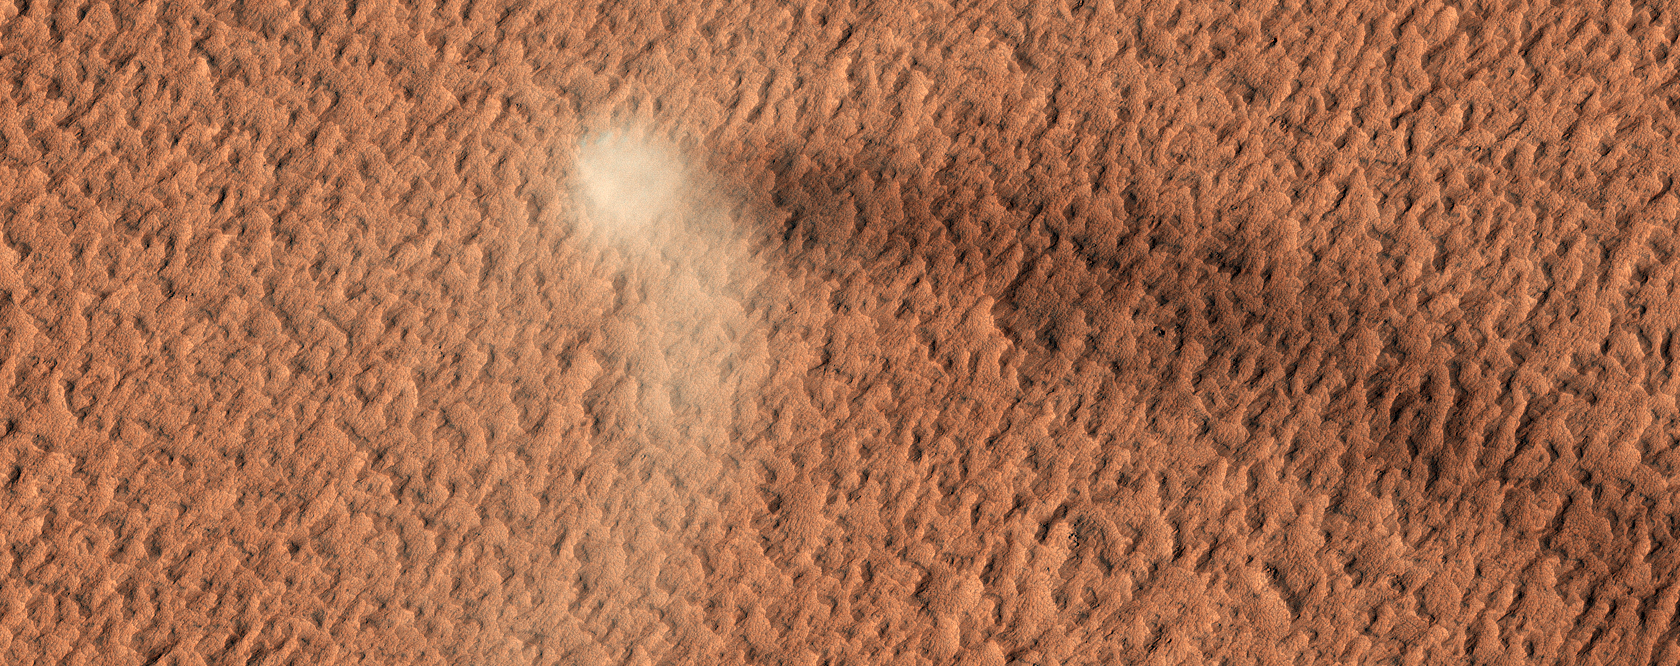 Sandsturm auf dem Planeten Mars